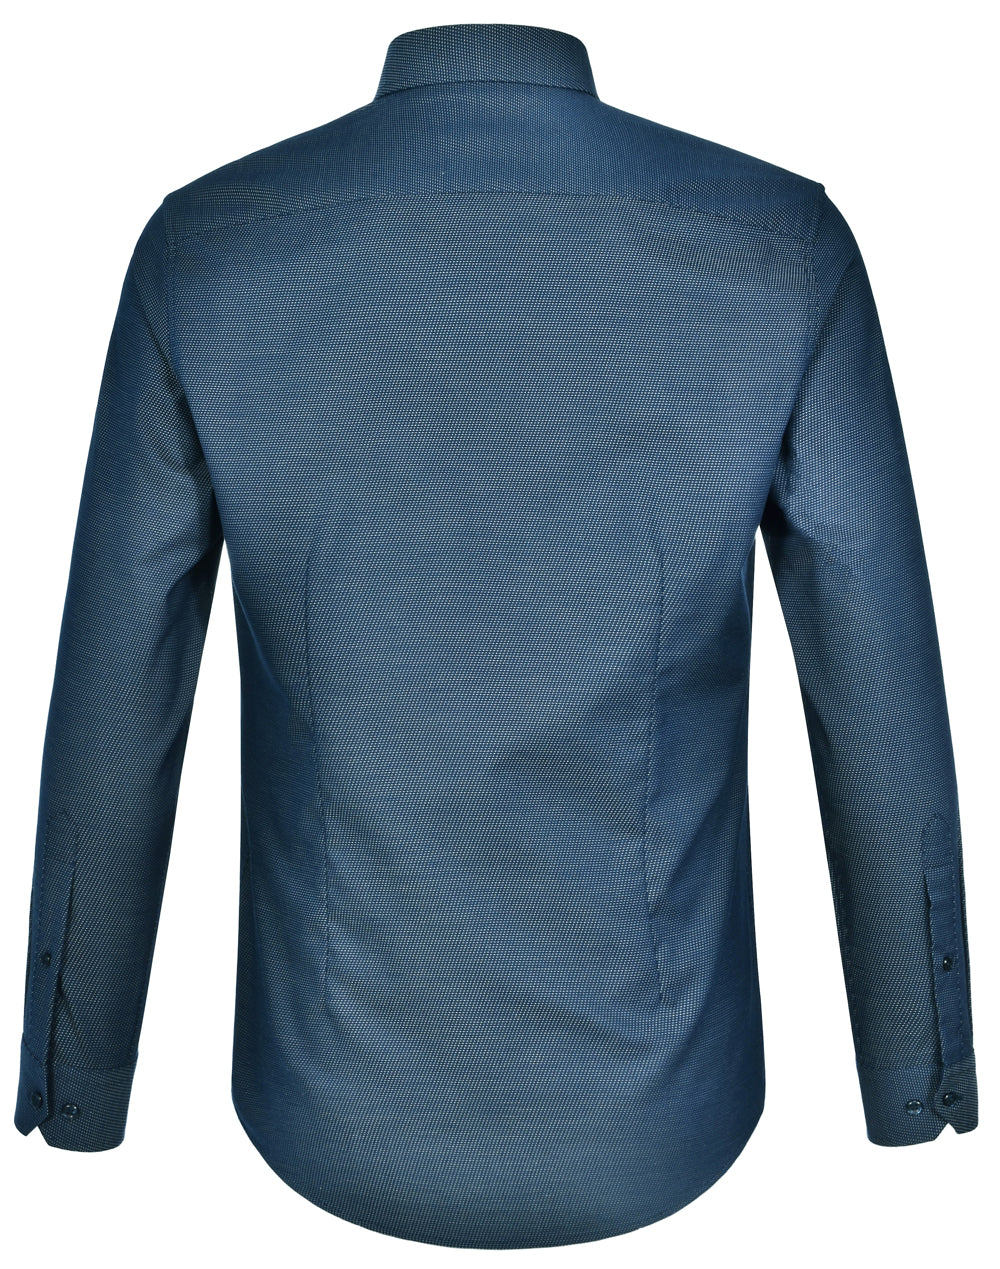 Winning Spirit-Ascot Mens Long Sleeve Dot  Jacquard Stretch Shirt-M7400L